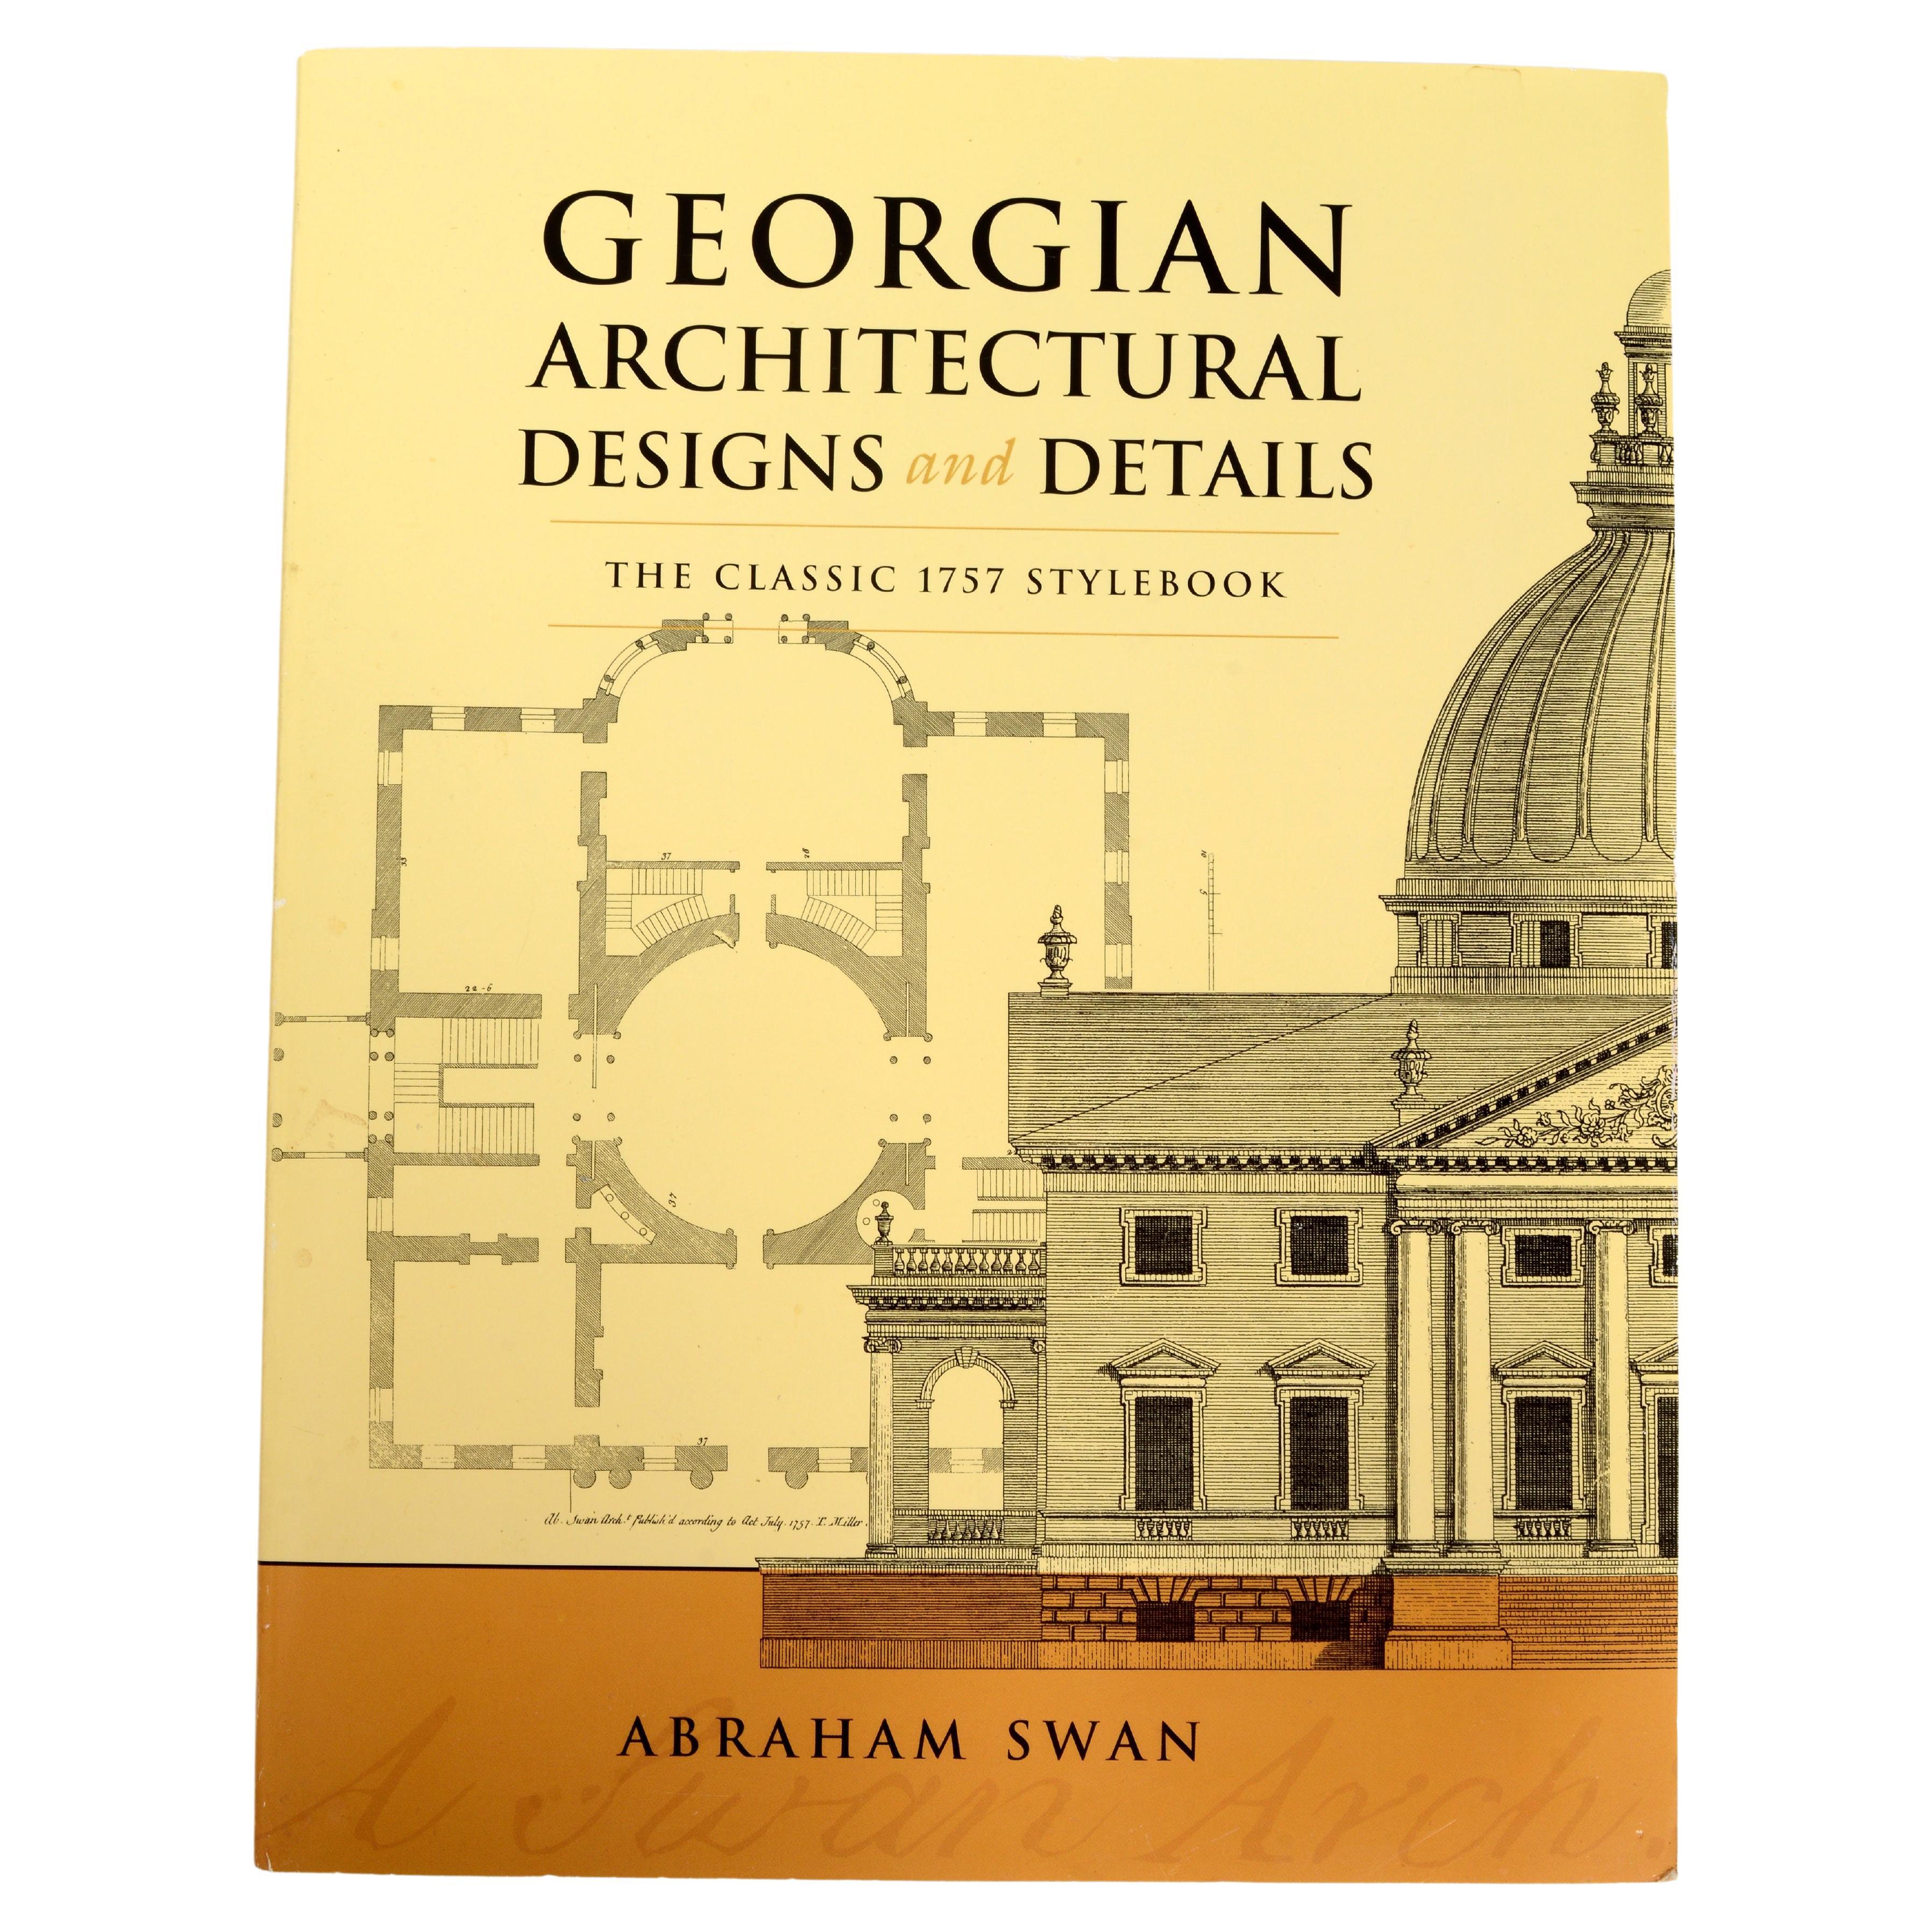 Designs et détails architecturaux géorgiens The Classic 1757 StyleBook 